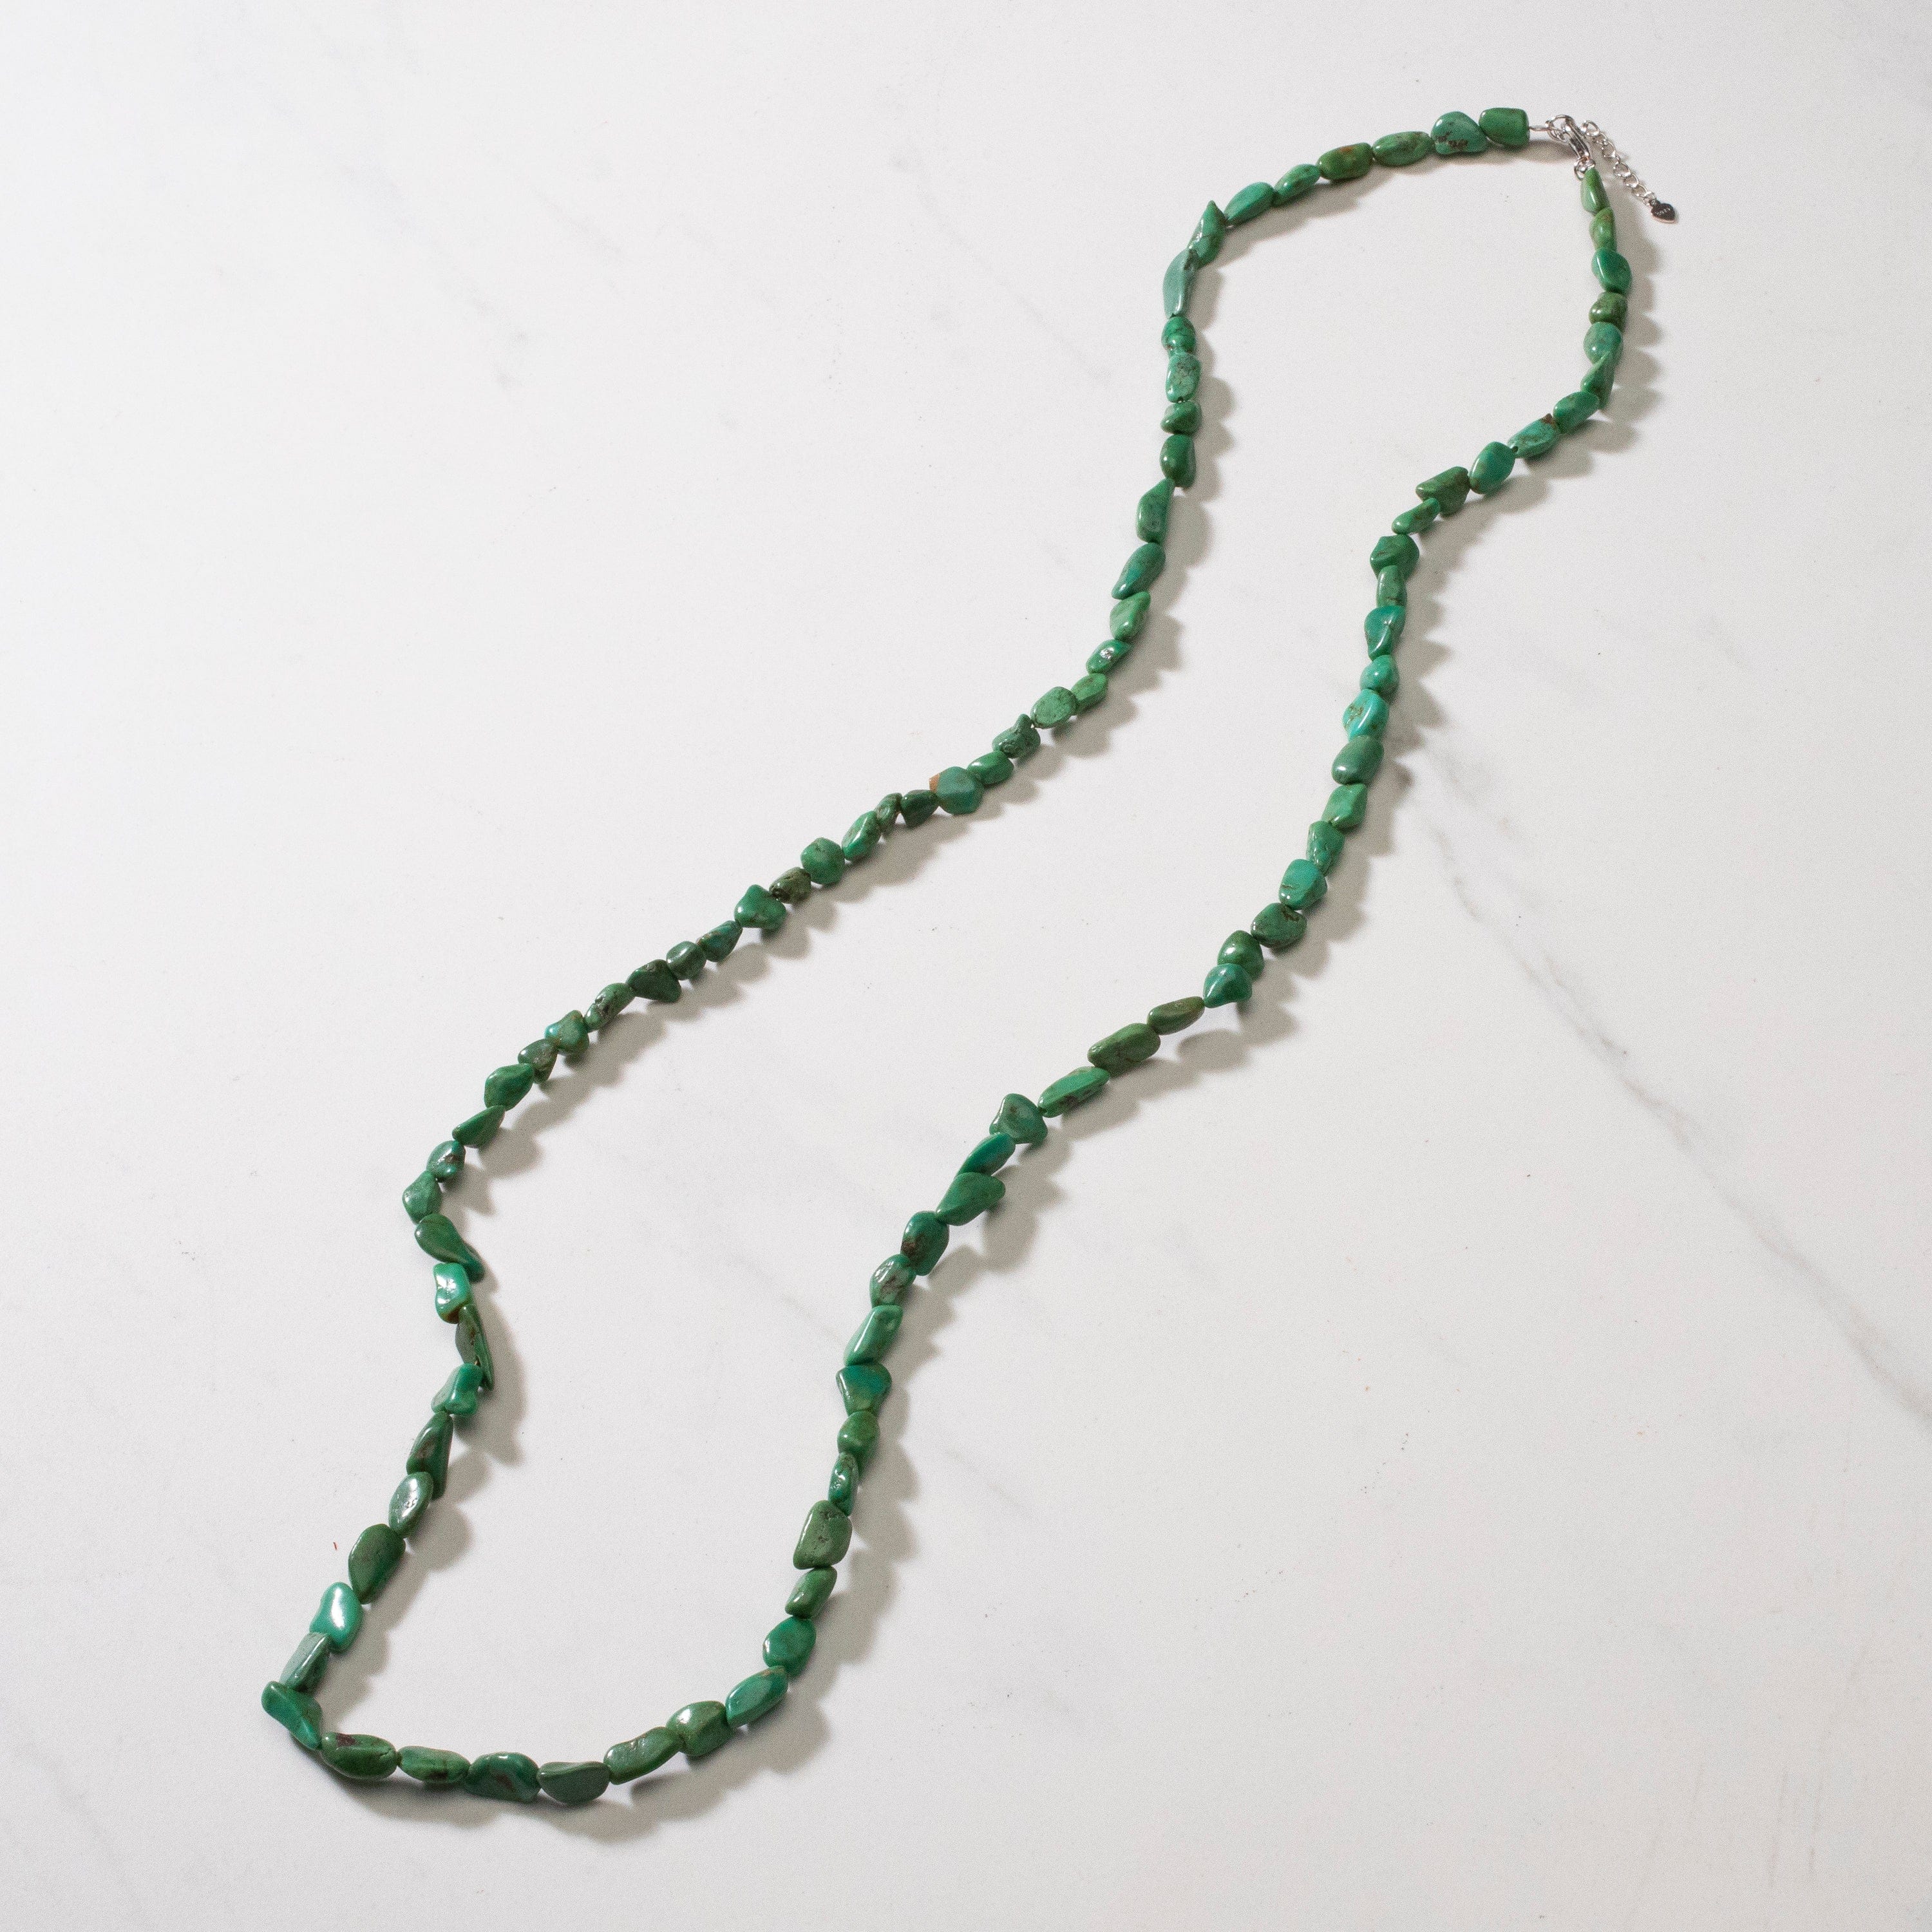 Kalifano Jewelry Anhui Turquoise Beaded Necklace - 36" NECK002